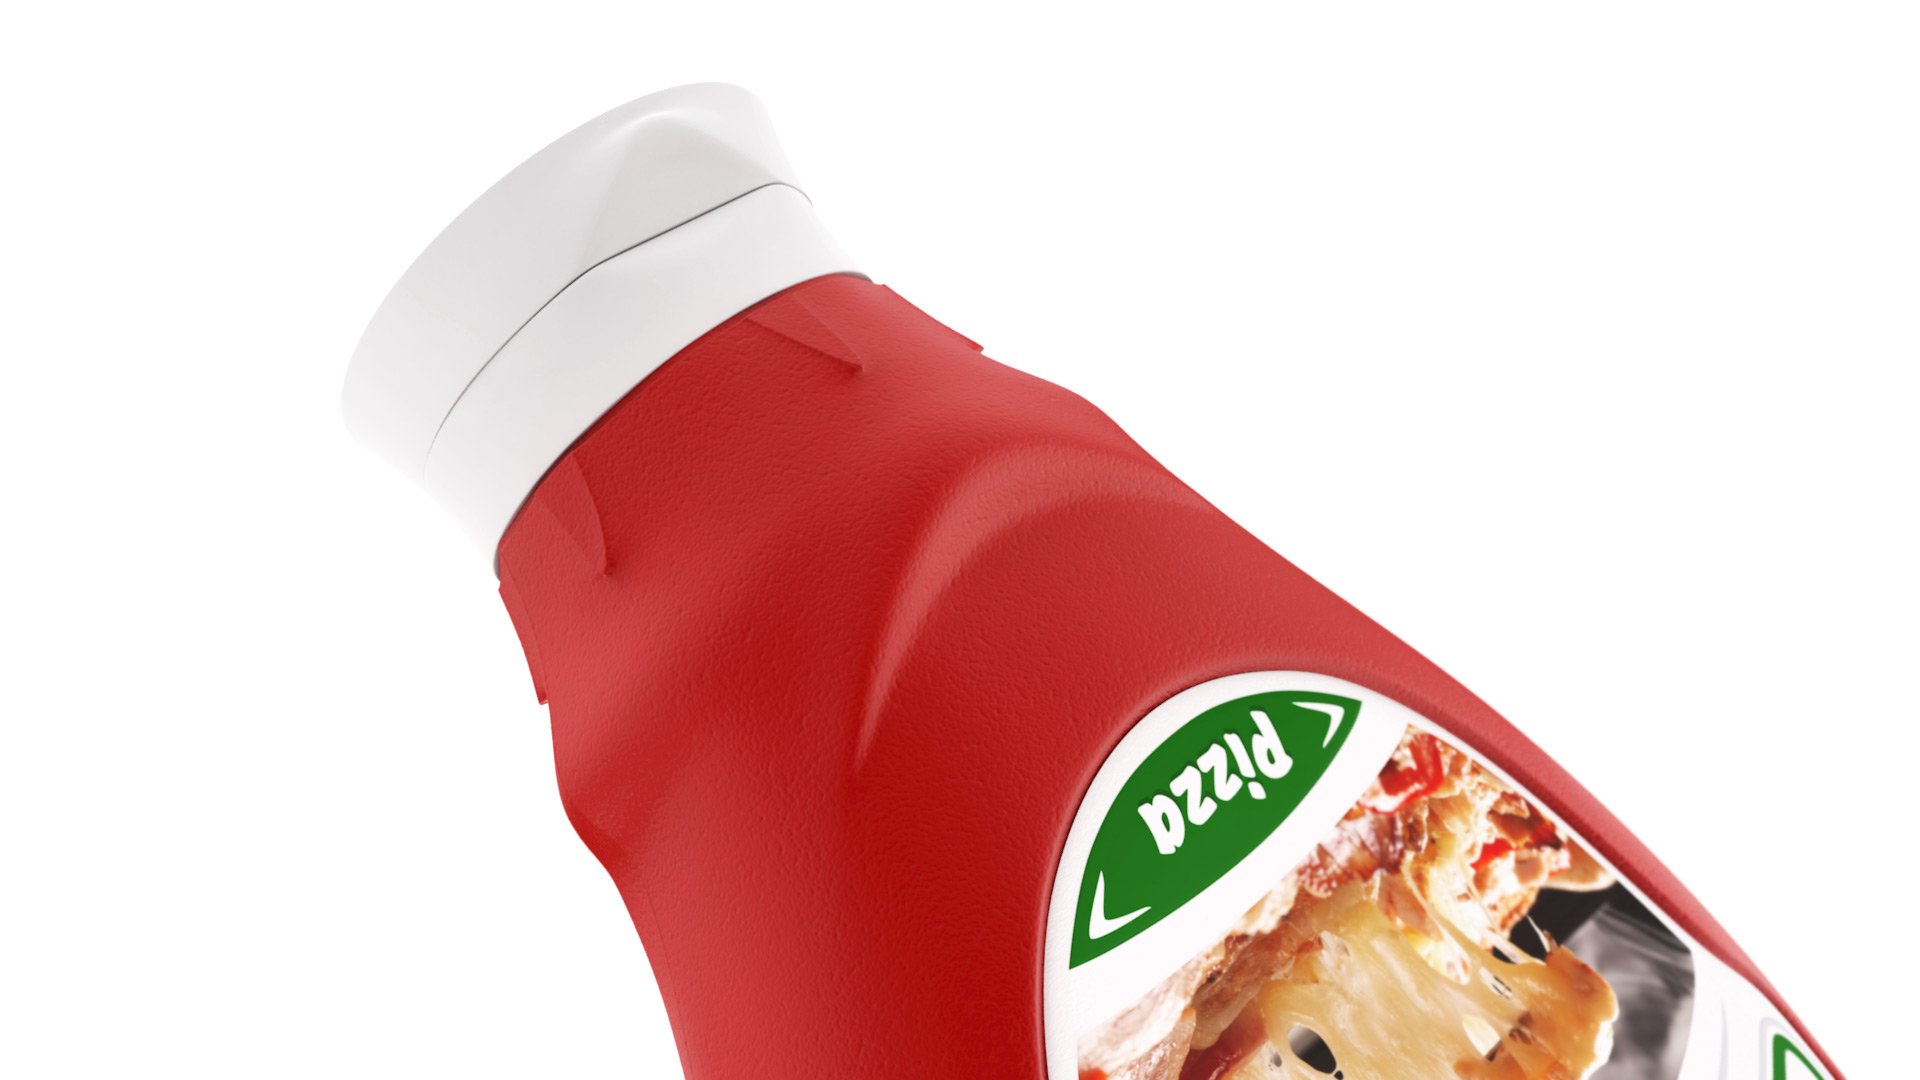 Vital tomato ketchup packaging design - plastic bottle detail